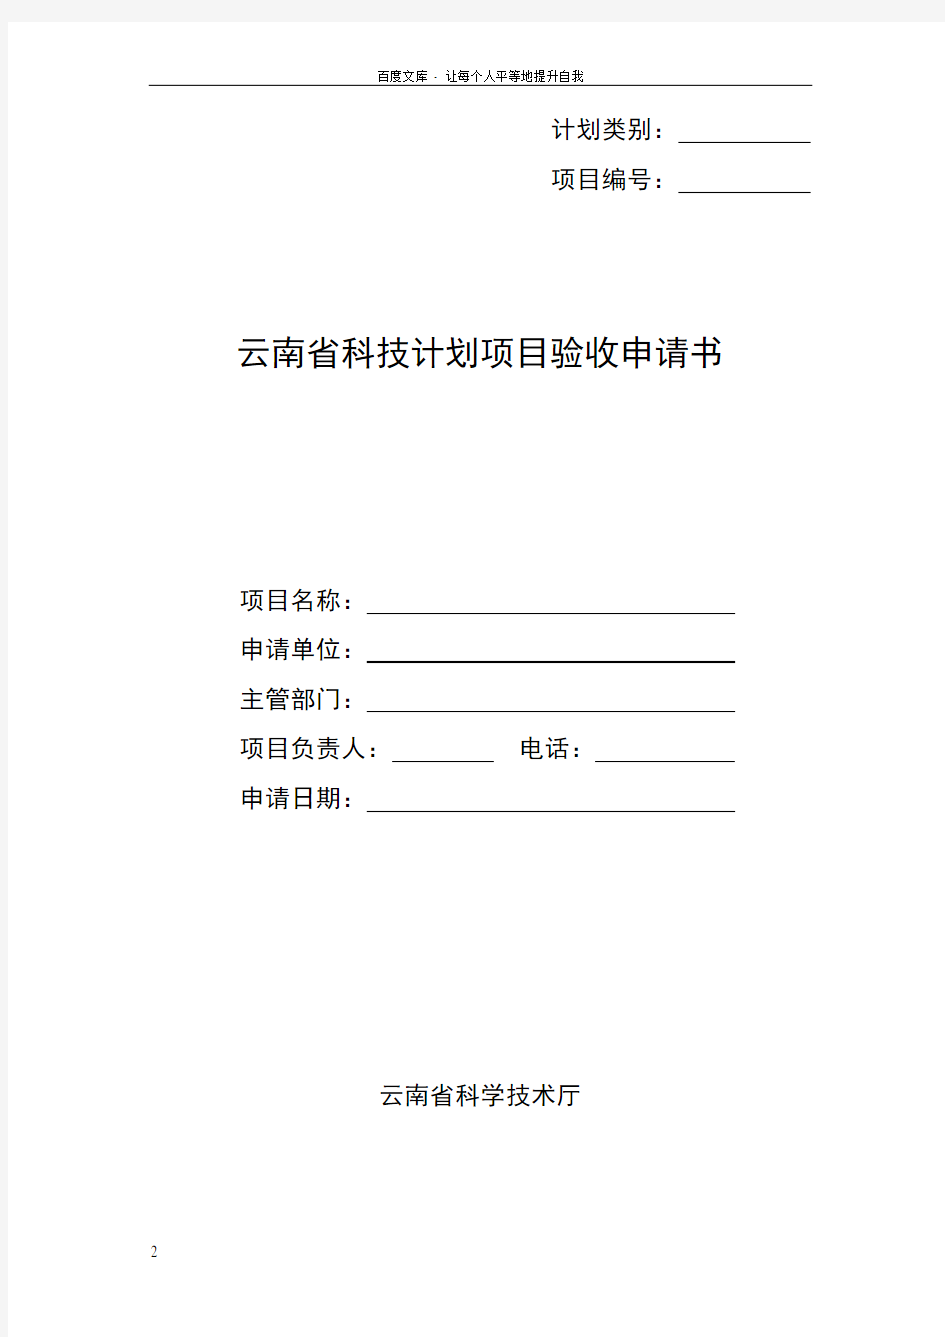 云南省科技计划项目验收材料清单